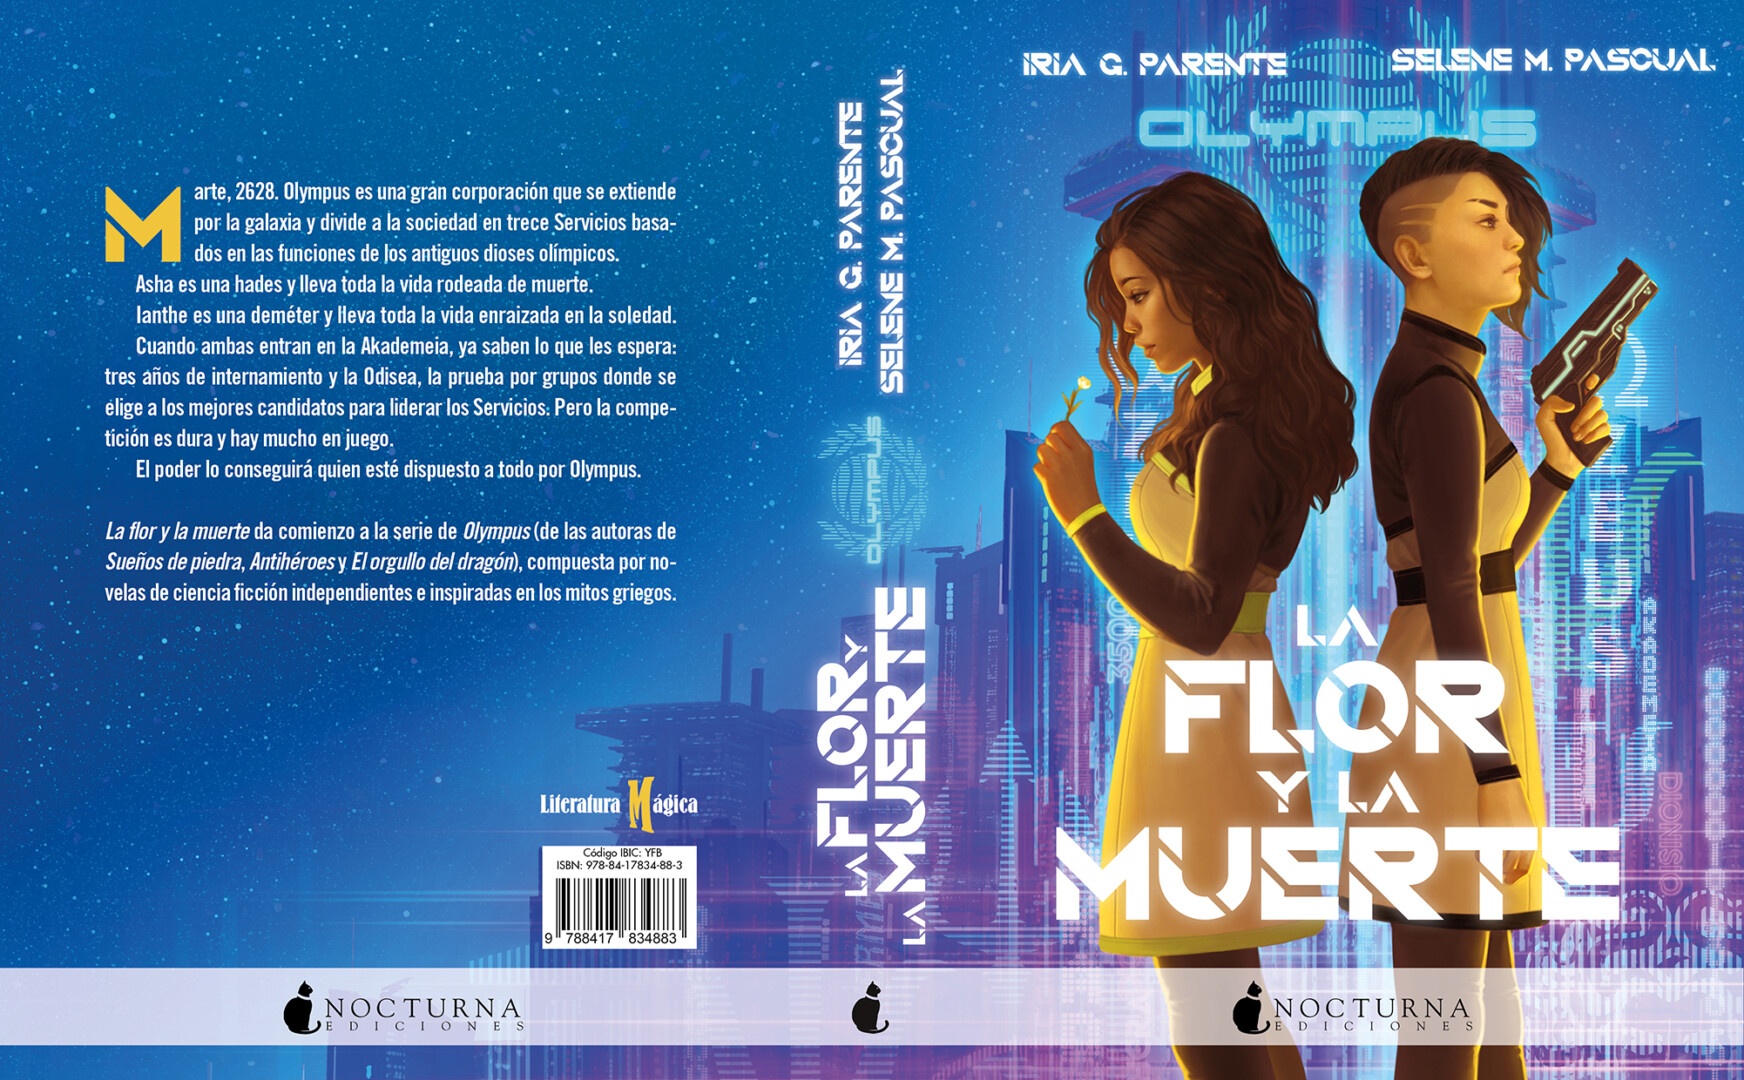 Nocturna Ediciones publicará 'La Flor y la Muerte', la nueva obra de Iria y  Selene